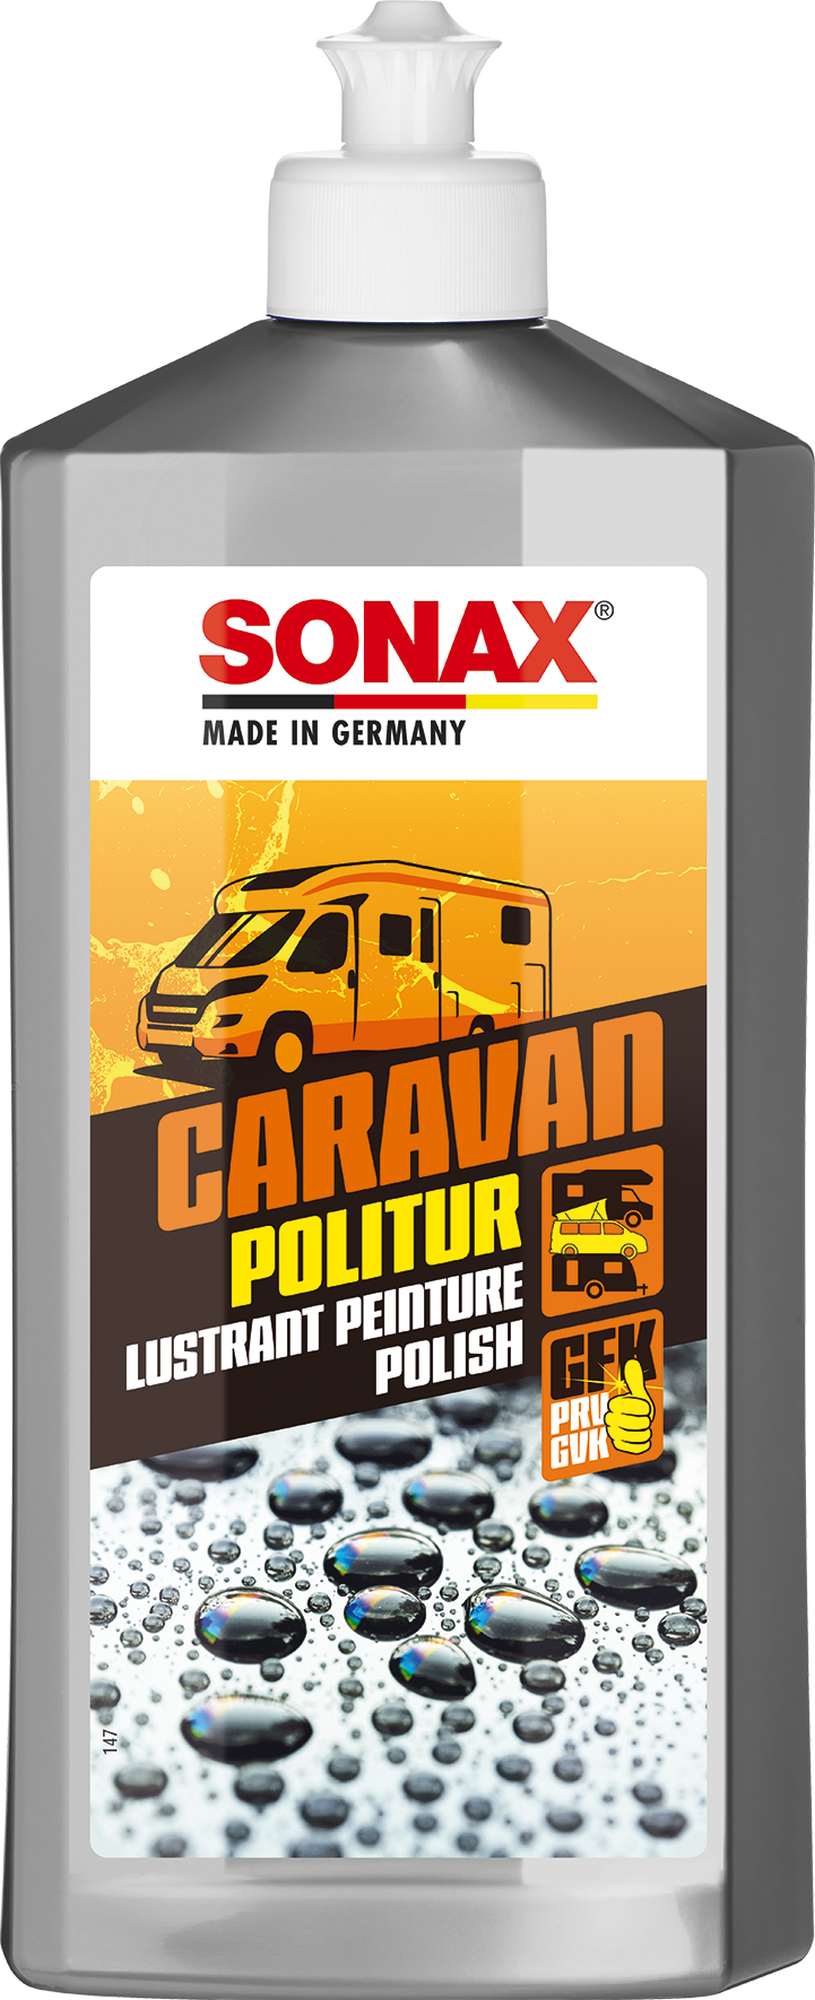 Sonax Caravan Politur, Autolackpolitur, Lackpolitur, 500ml